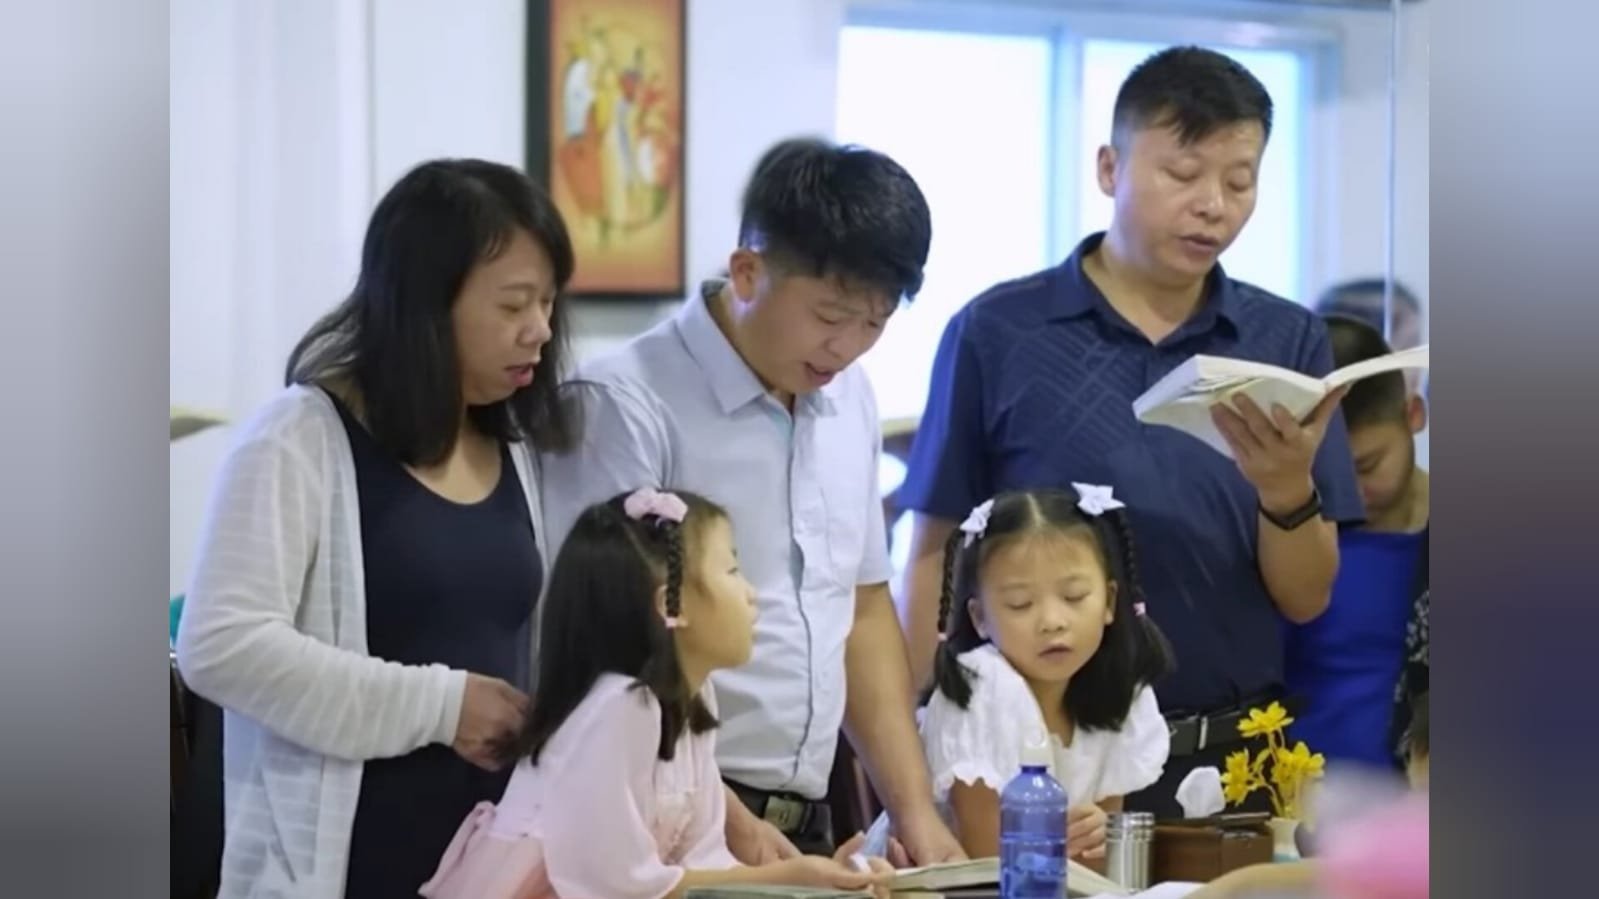 Igreja perseguida que fugiu da China faz culto pela 1ª vez nos EUA